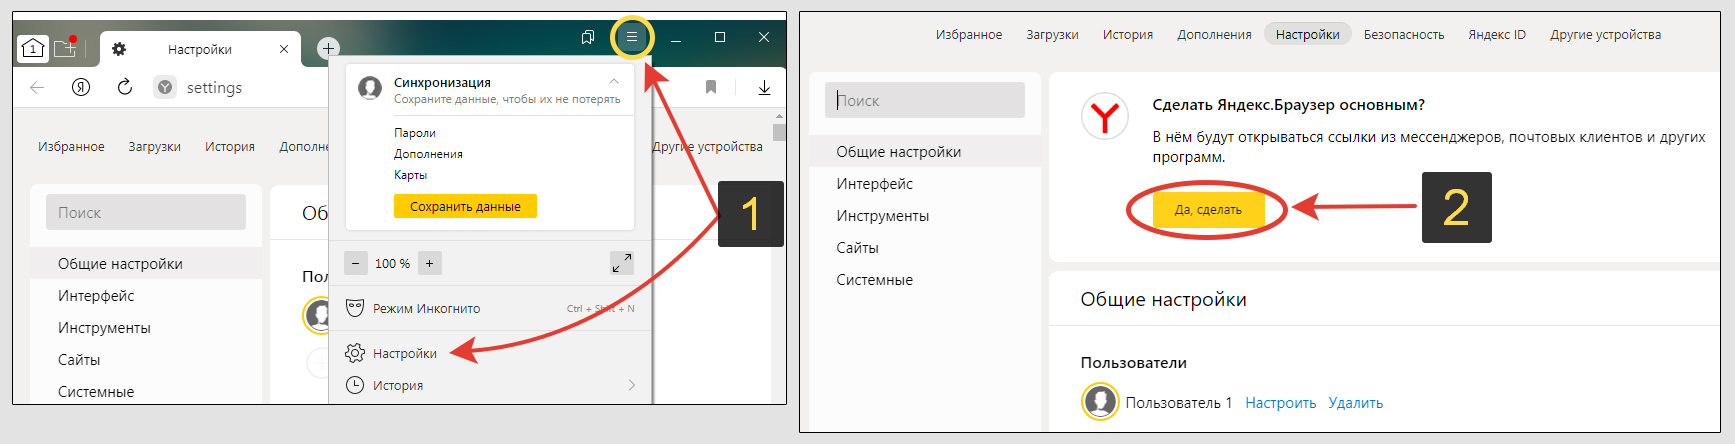 Меню Yandex Browser, настройки, кнопка выбора основного браузера.